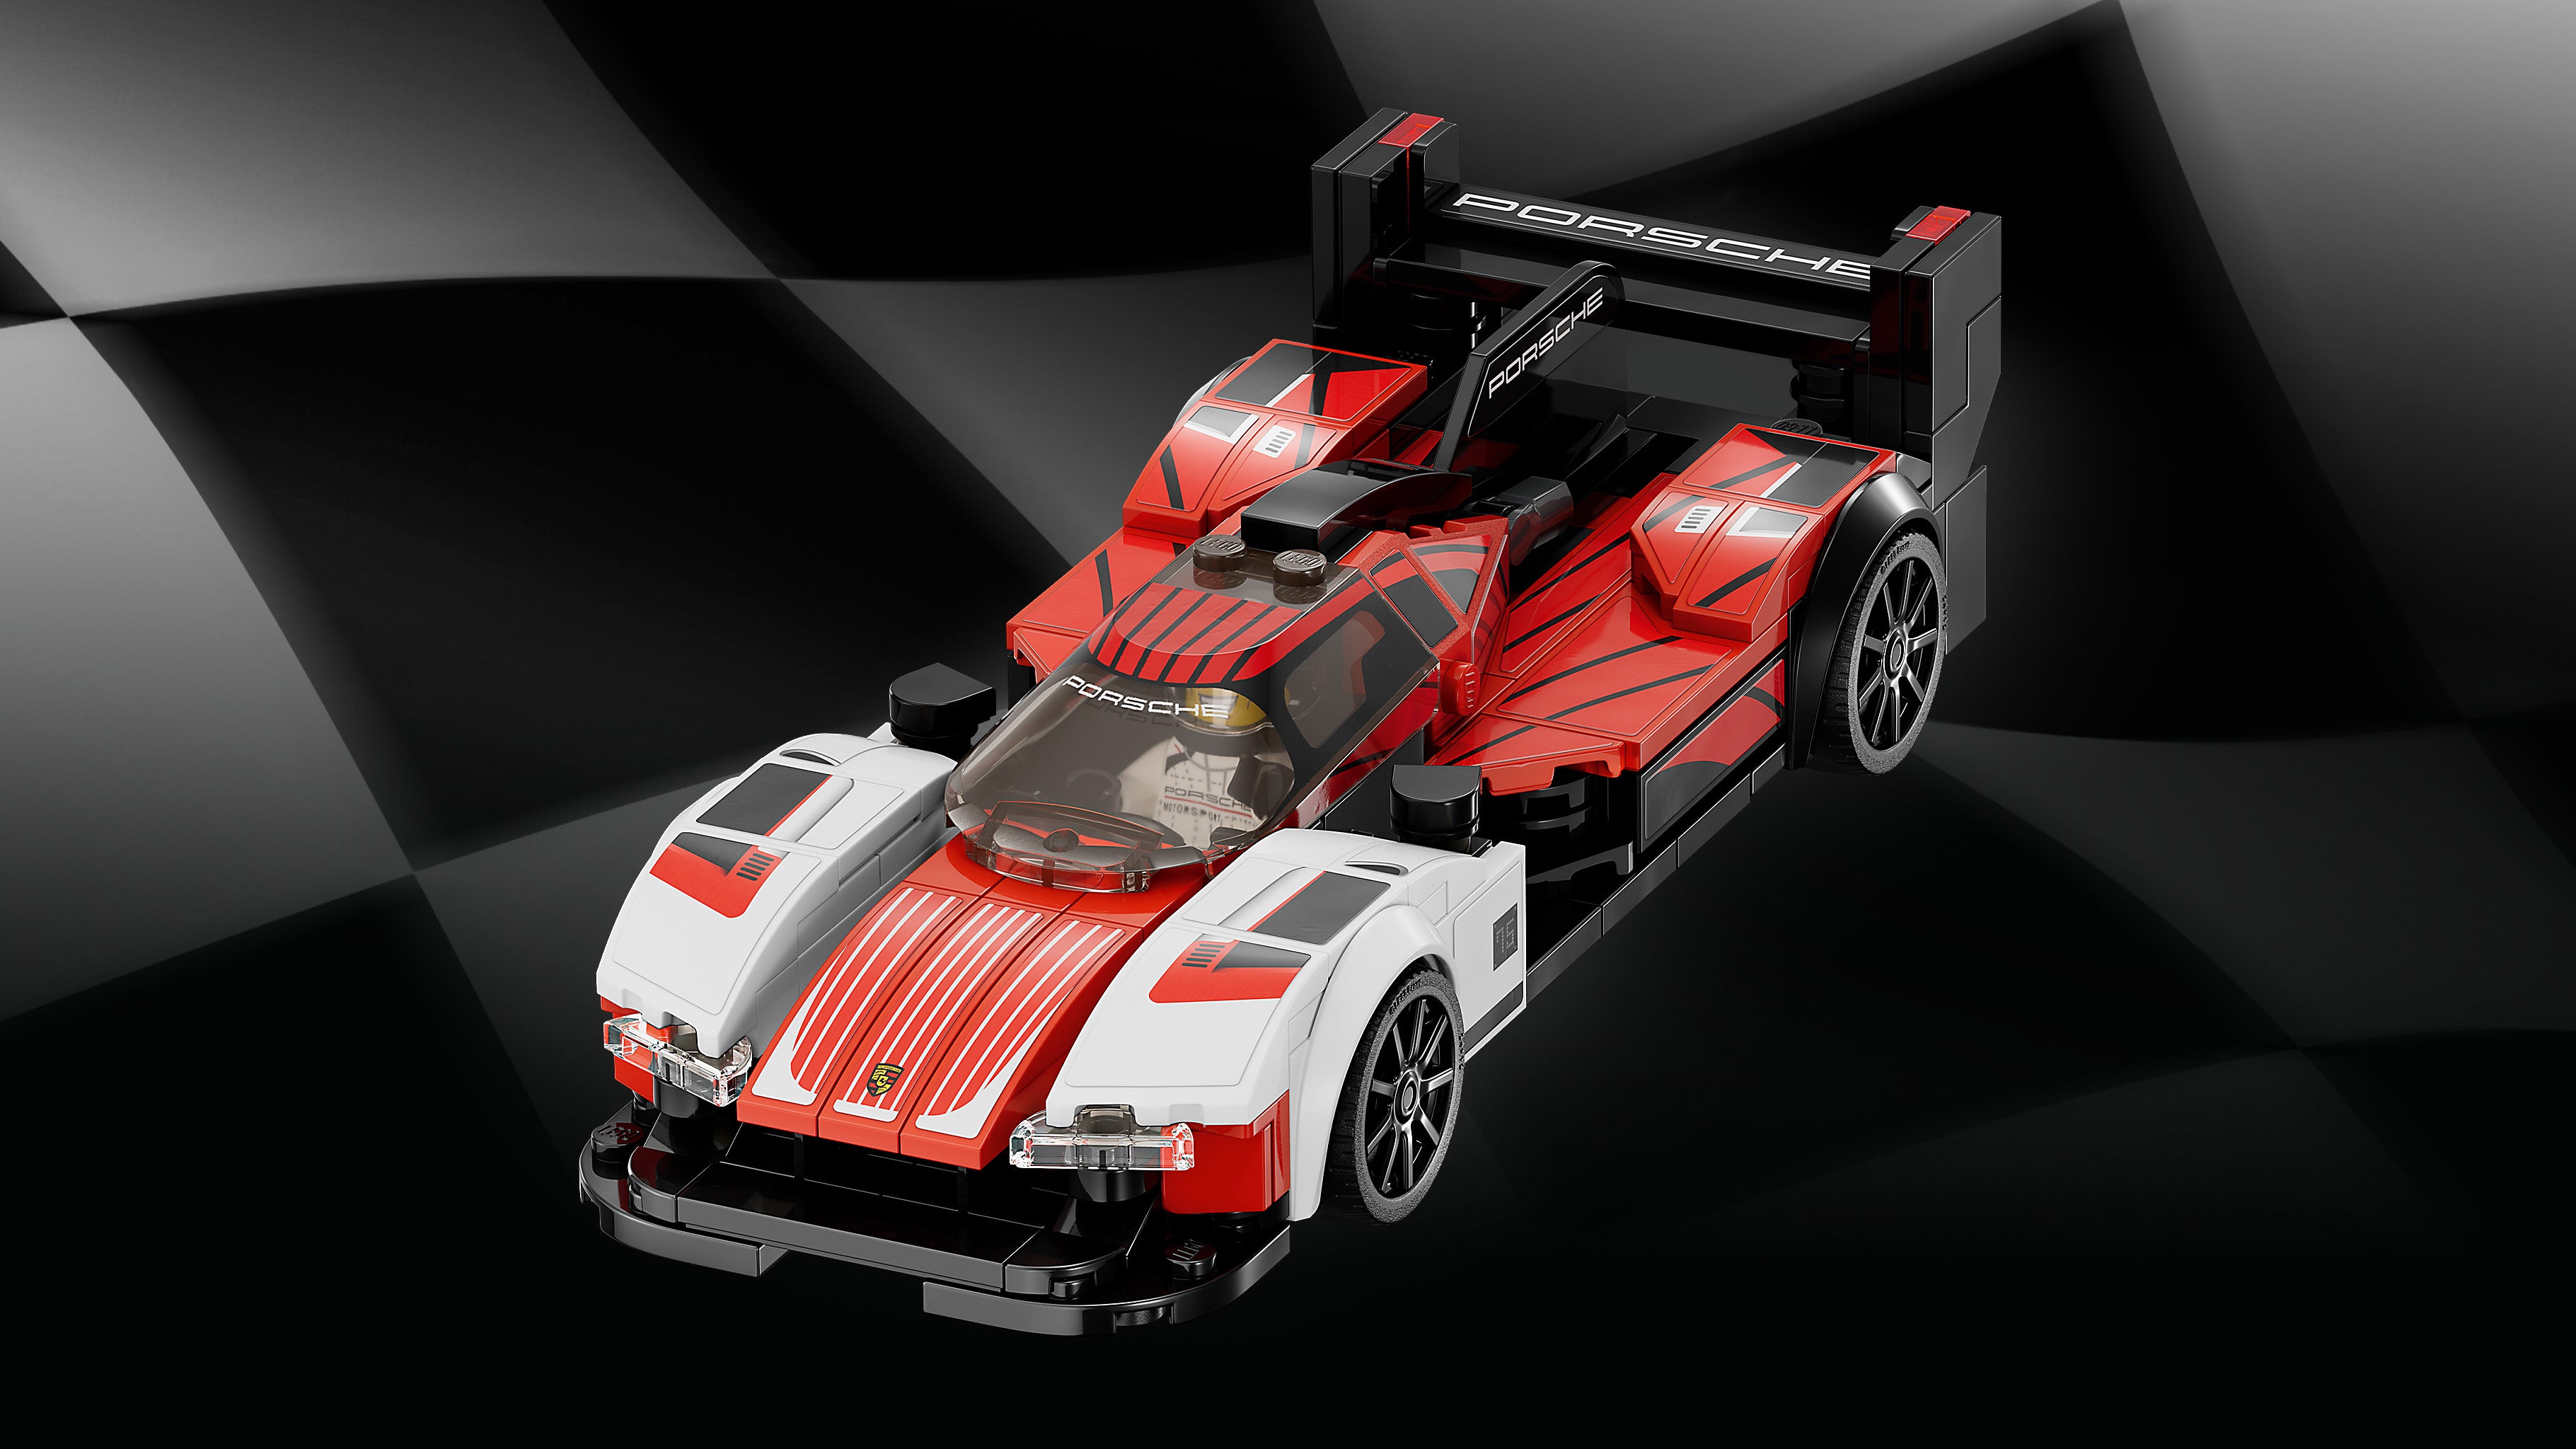 Lego 76916 Porsche 963